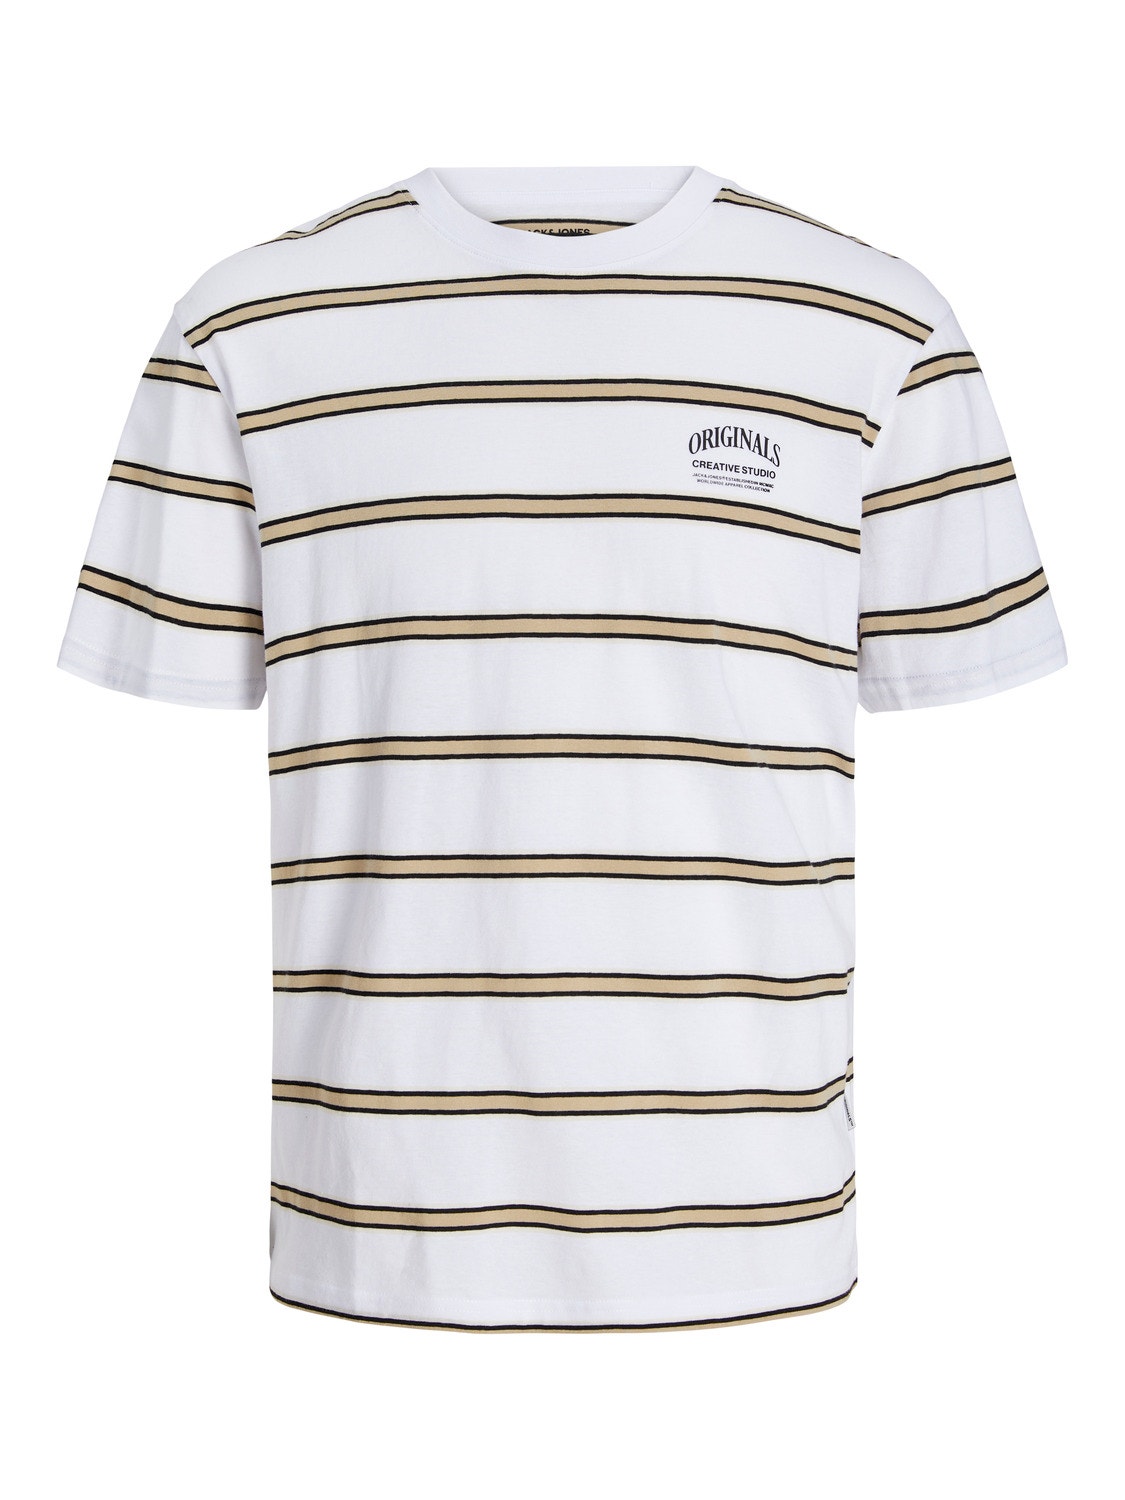 Jack & Jones T-shirt Listrado Decote Redondo -Bright White - 12251901